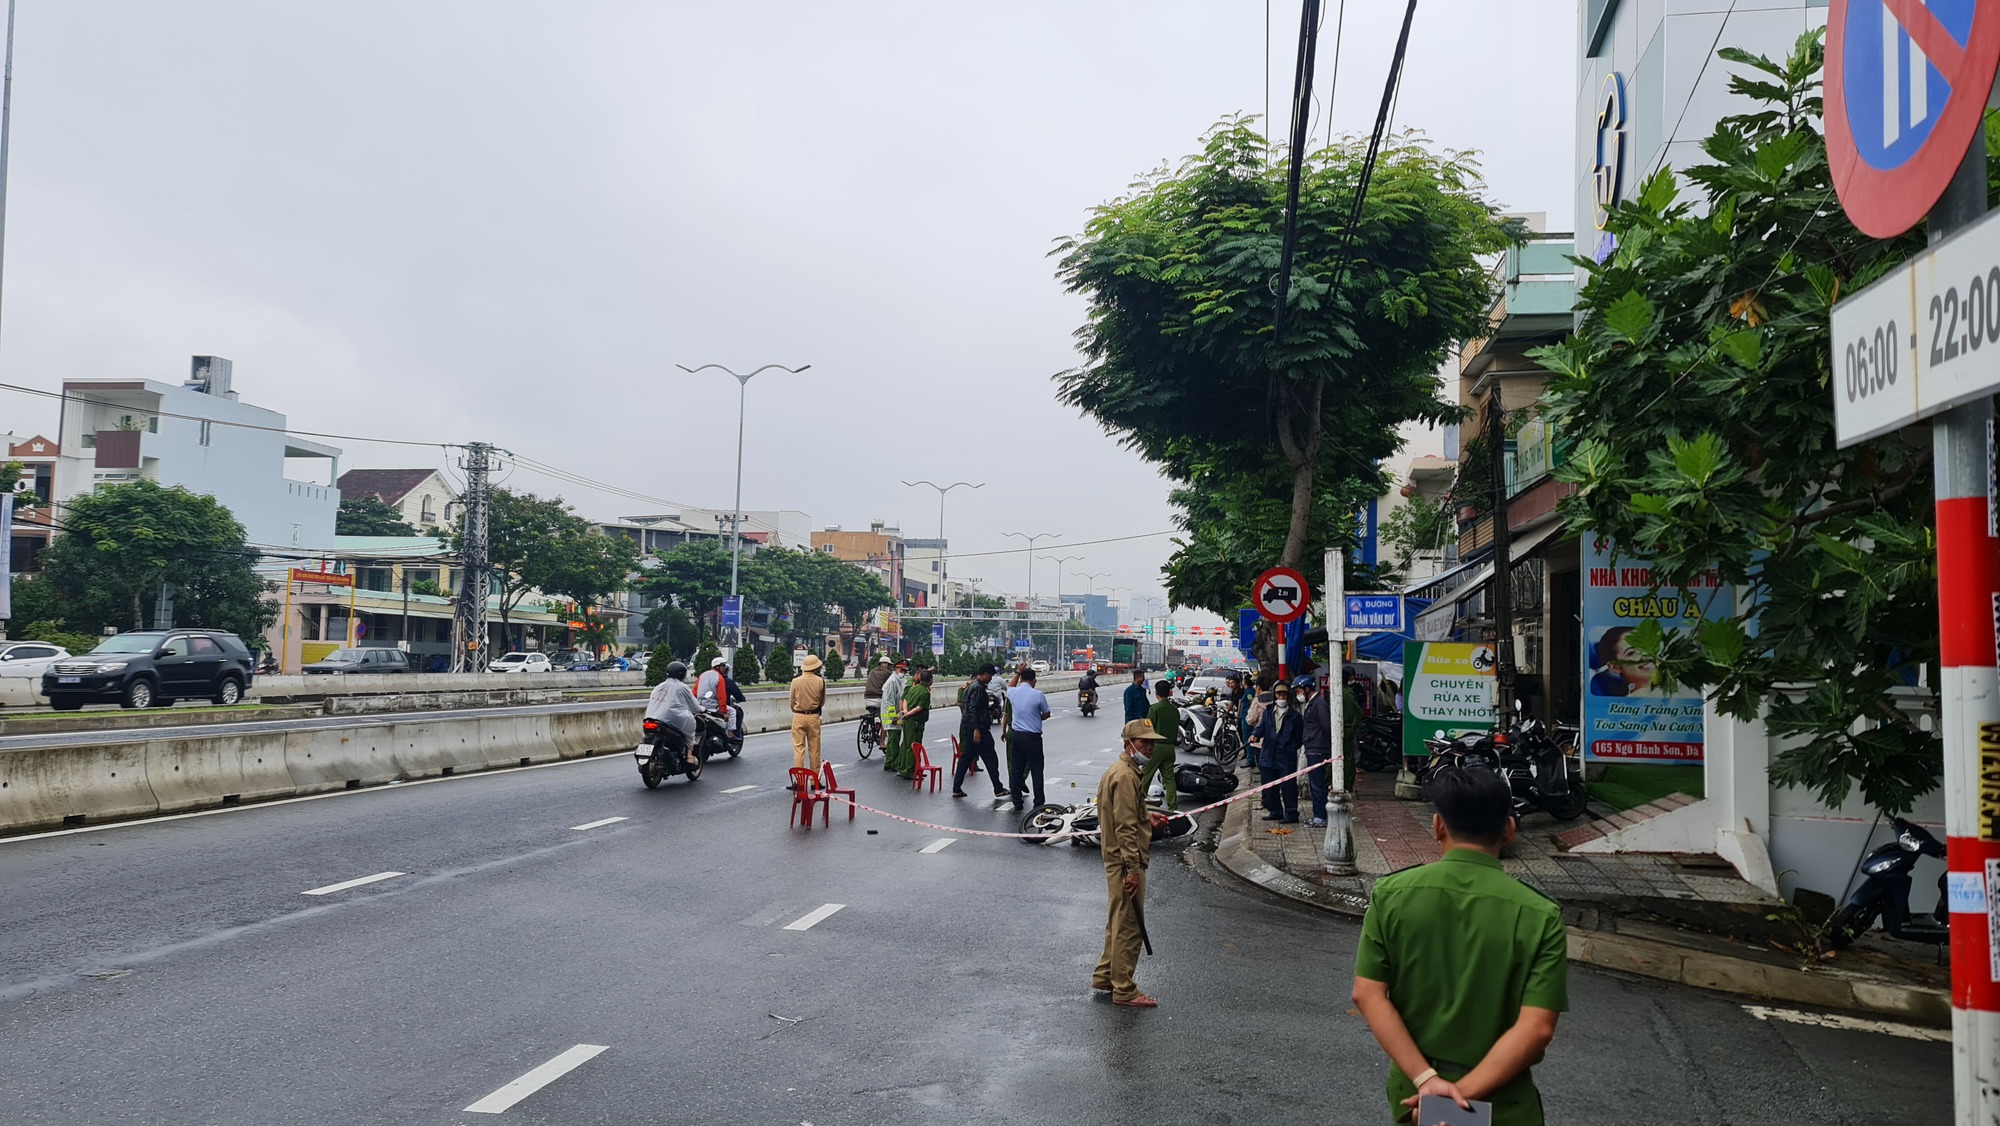 NÓNG: Cướp ngân hàng tại Đà Nẵng, 1 người chết